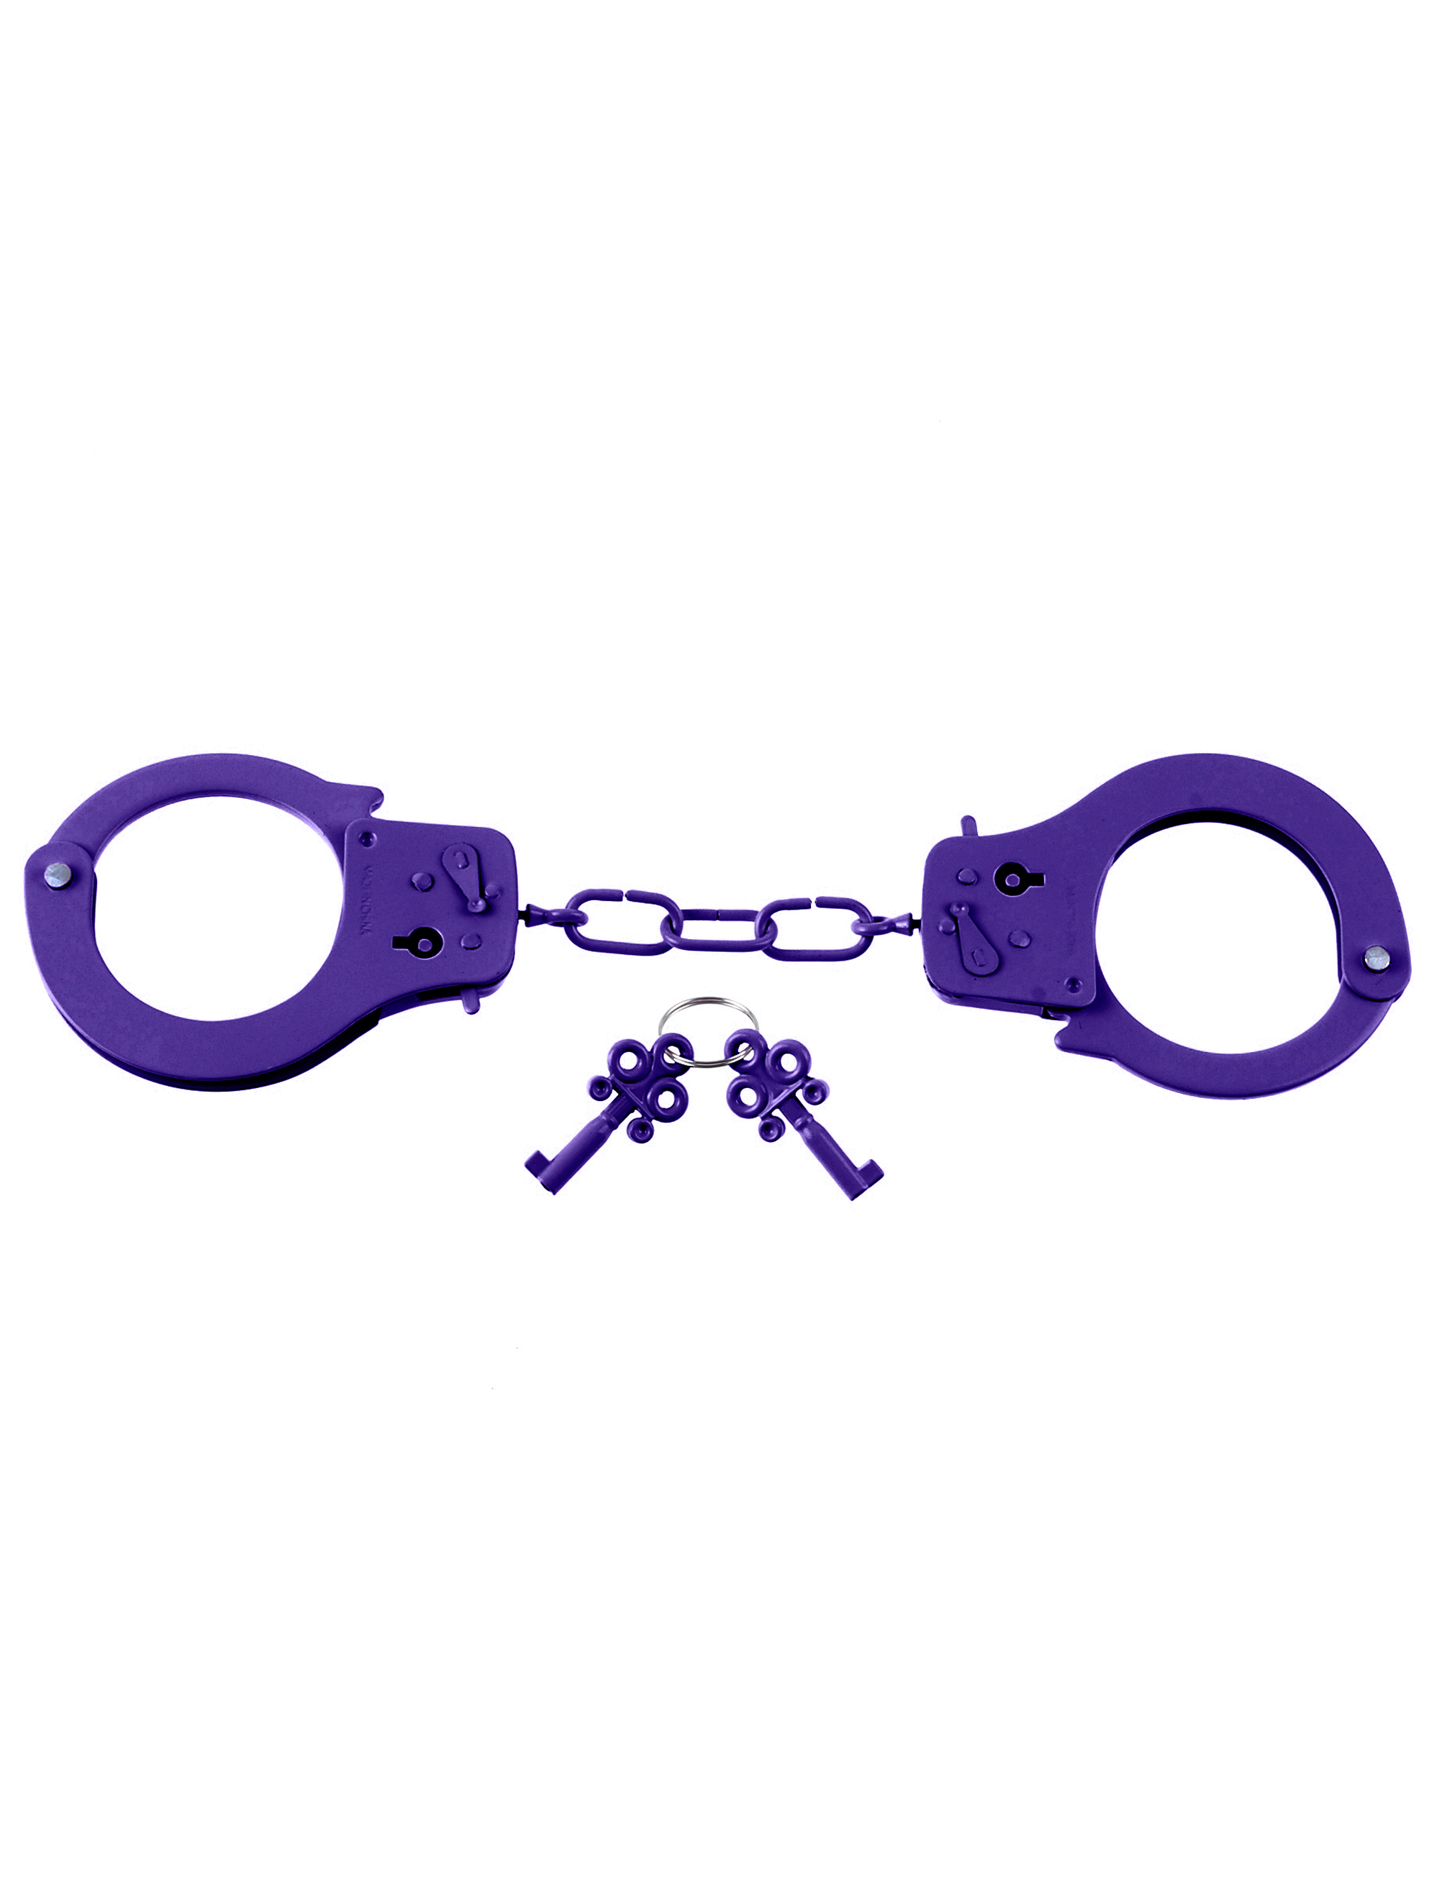 Designer Metal Handcuffs - Purple